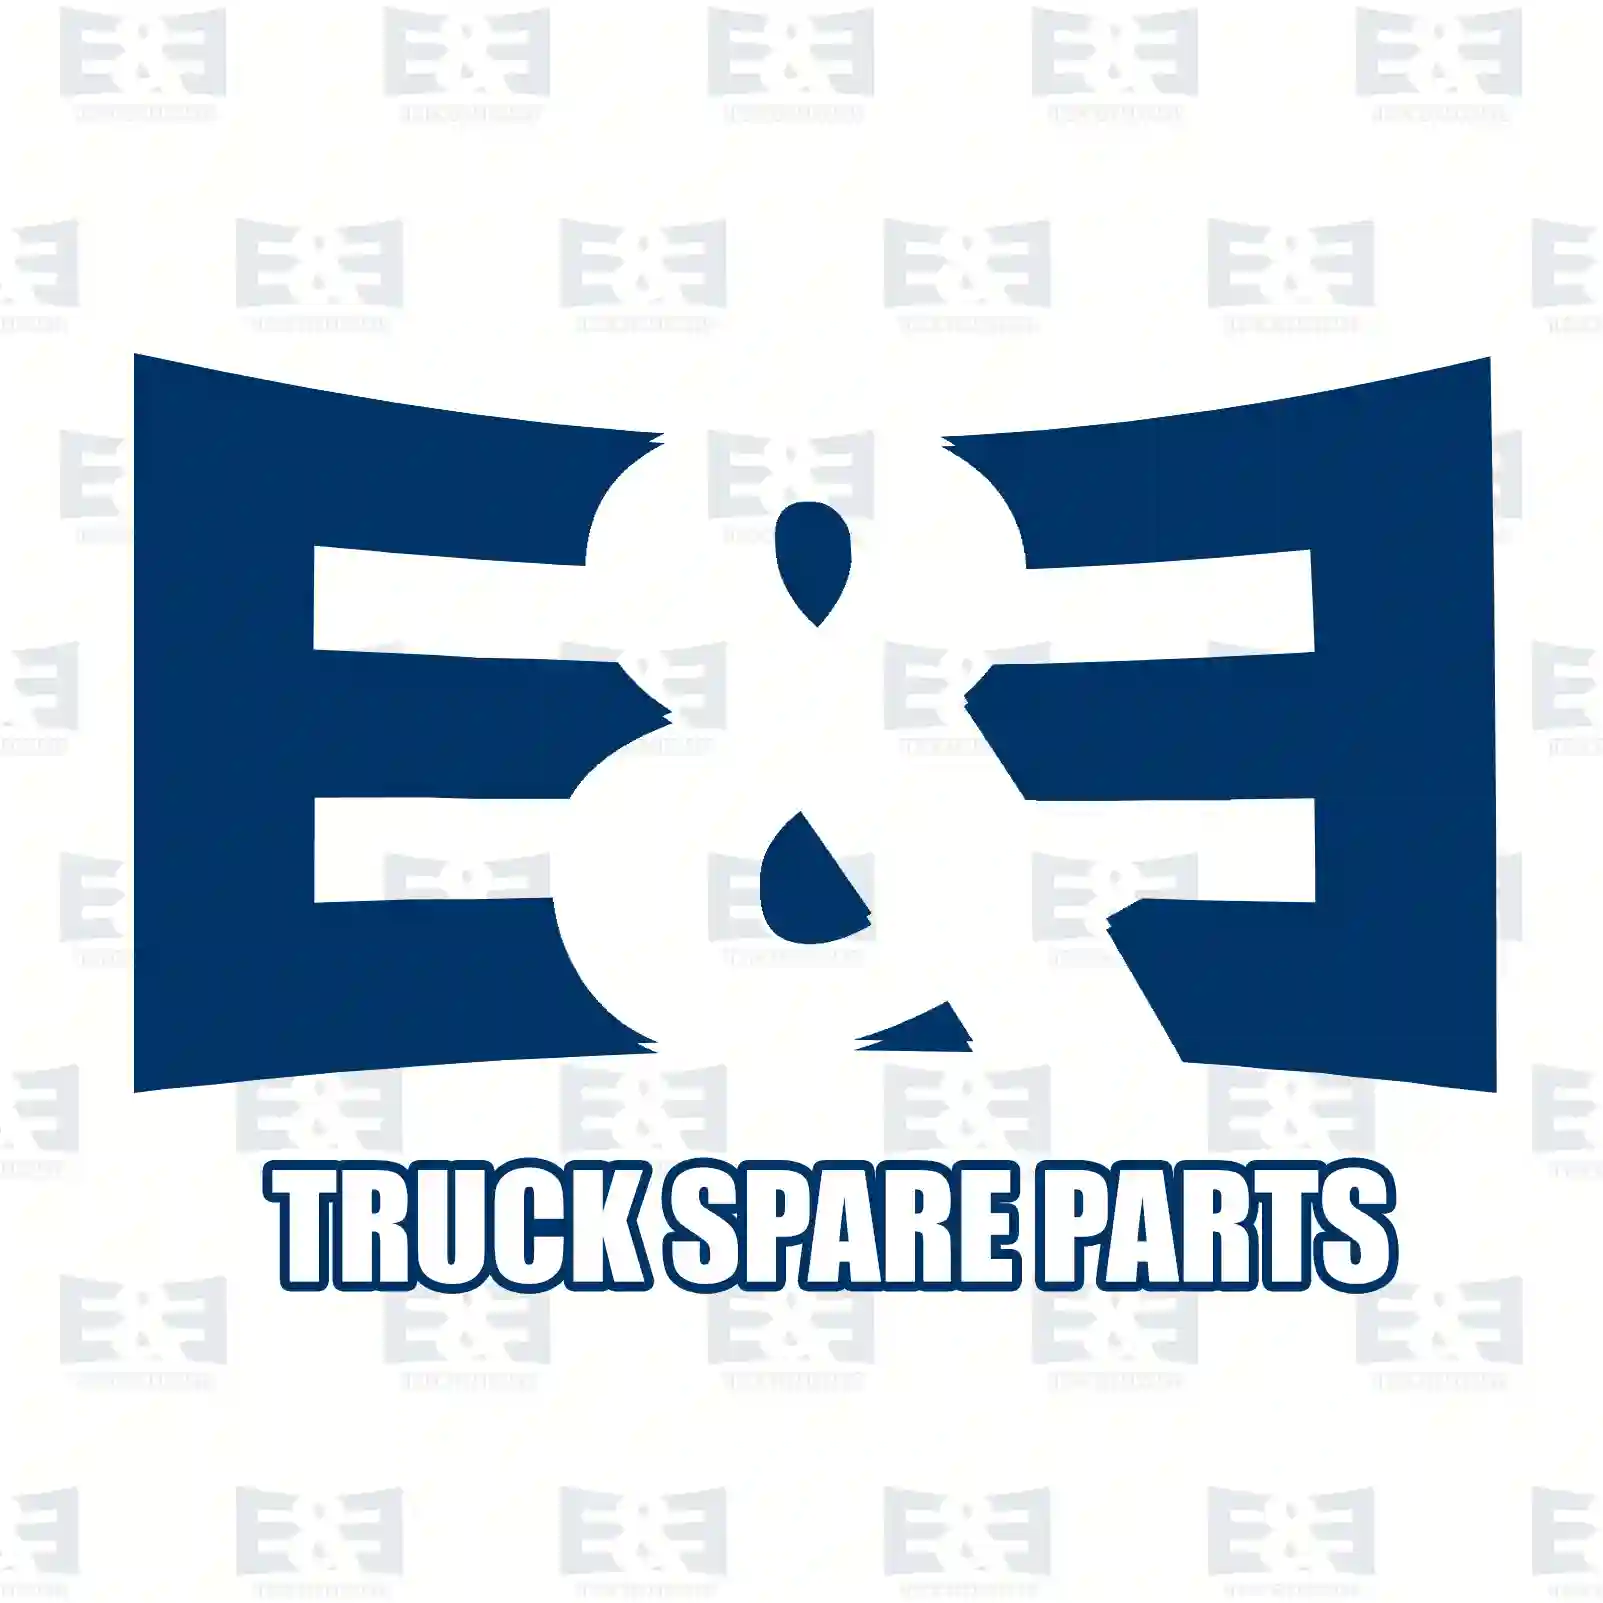 Wear indicator, 2E2296126, 2D0919351, 9015400017, 9015400117, 901540011710, 2D0919351, 2D0919351, 2D0919351 ||  2E2296126 E&E Truck Spare Parts | Truck Spare Parts, Auotomotive Spare Parts Wear indicator, 2E2296126, 2D0919351, 9015400017, 9015400117, 901540011710, 2D0919351, 2D0919351, 2D0919351 ||  2E2296126 E&E Truck Spare Parts | Truck Spare Parts, Auotomotive Spare Parts